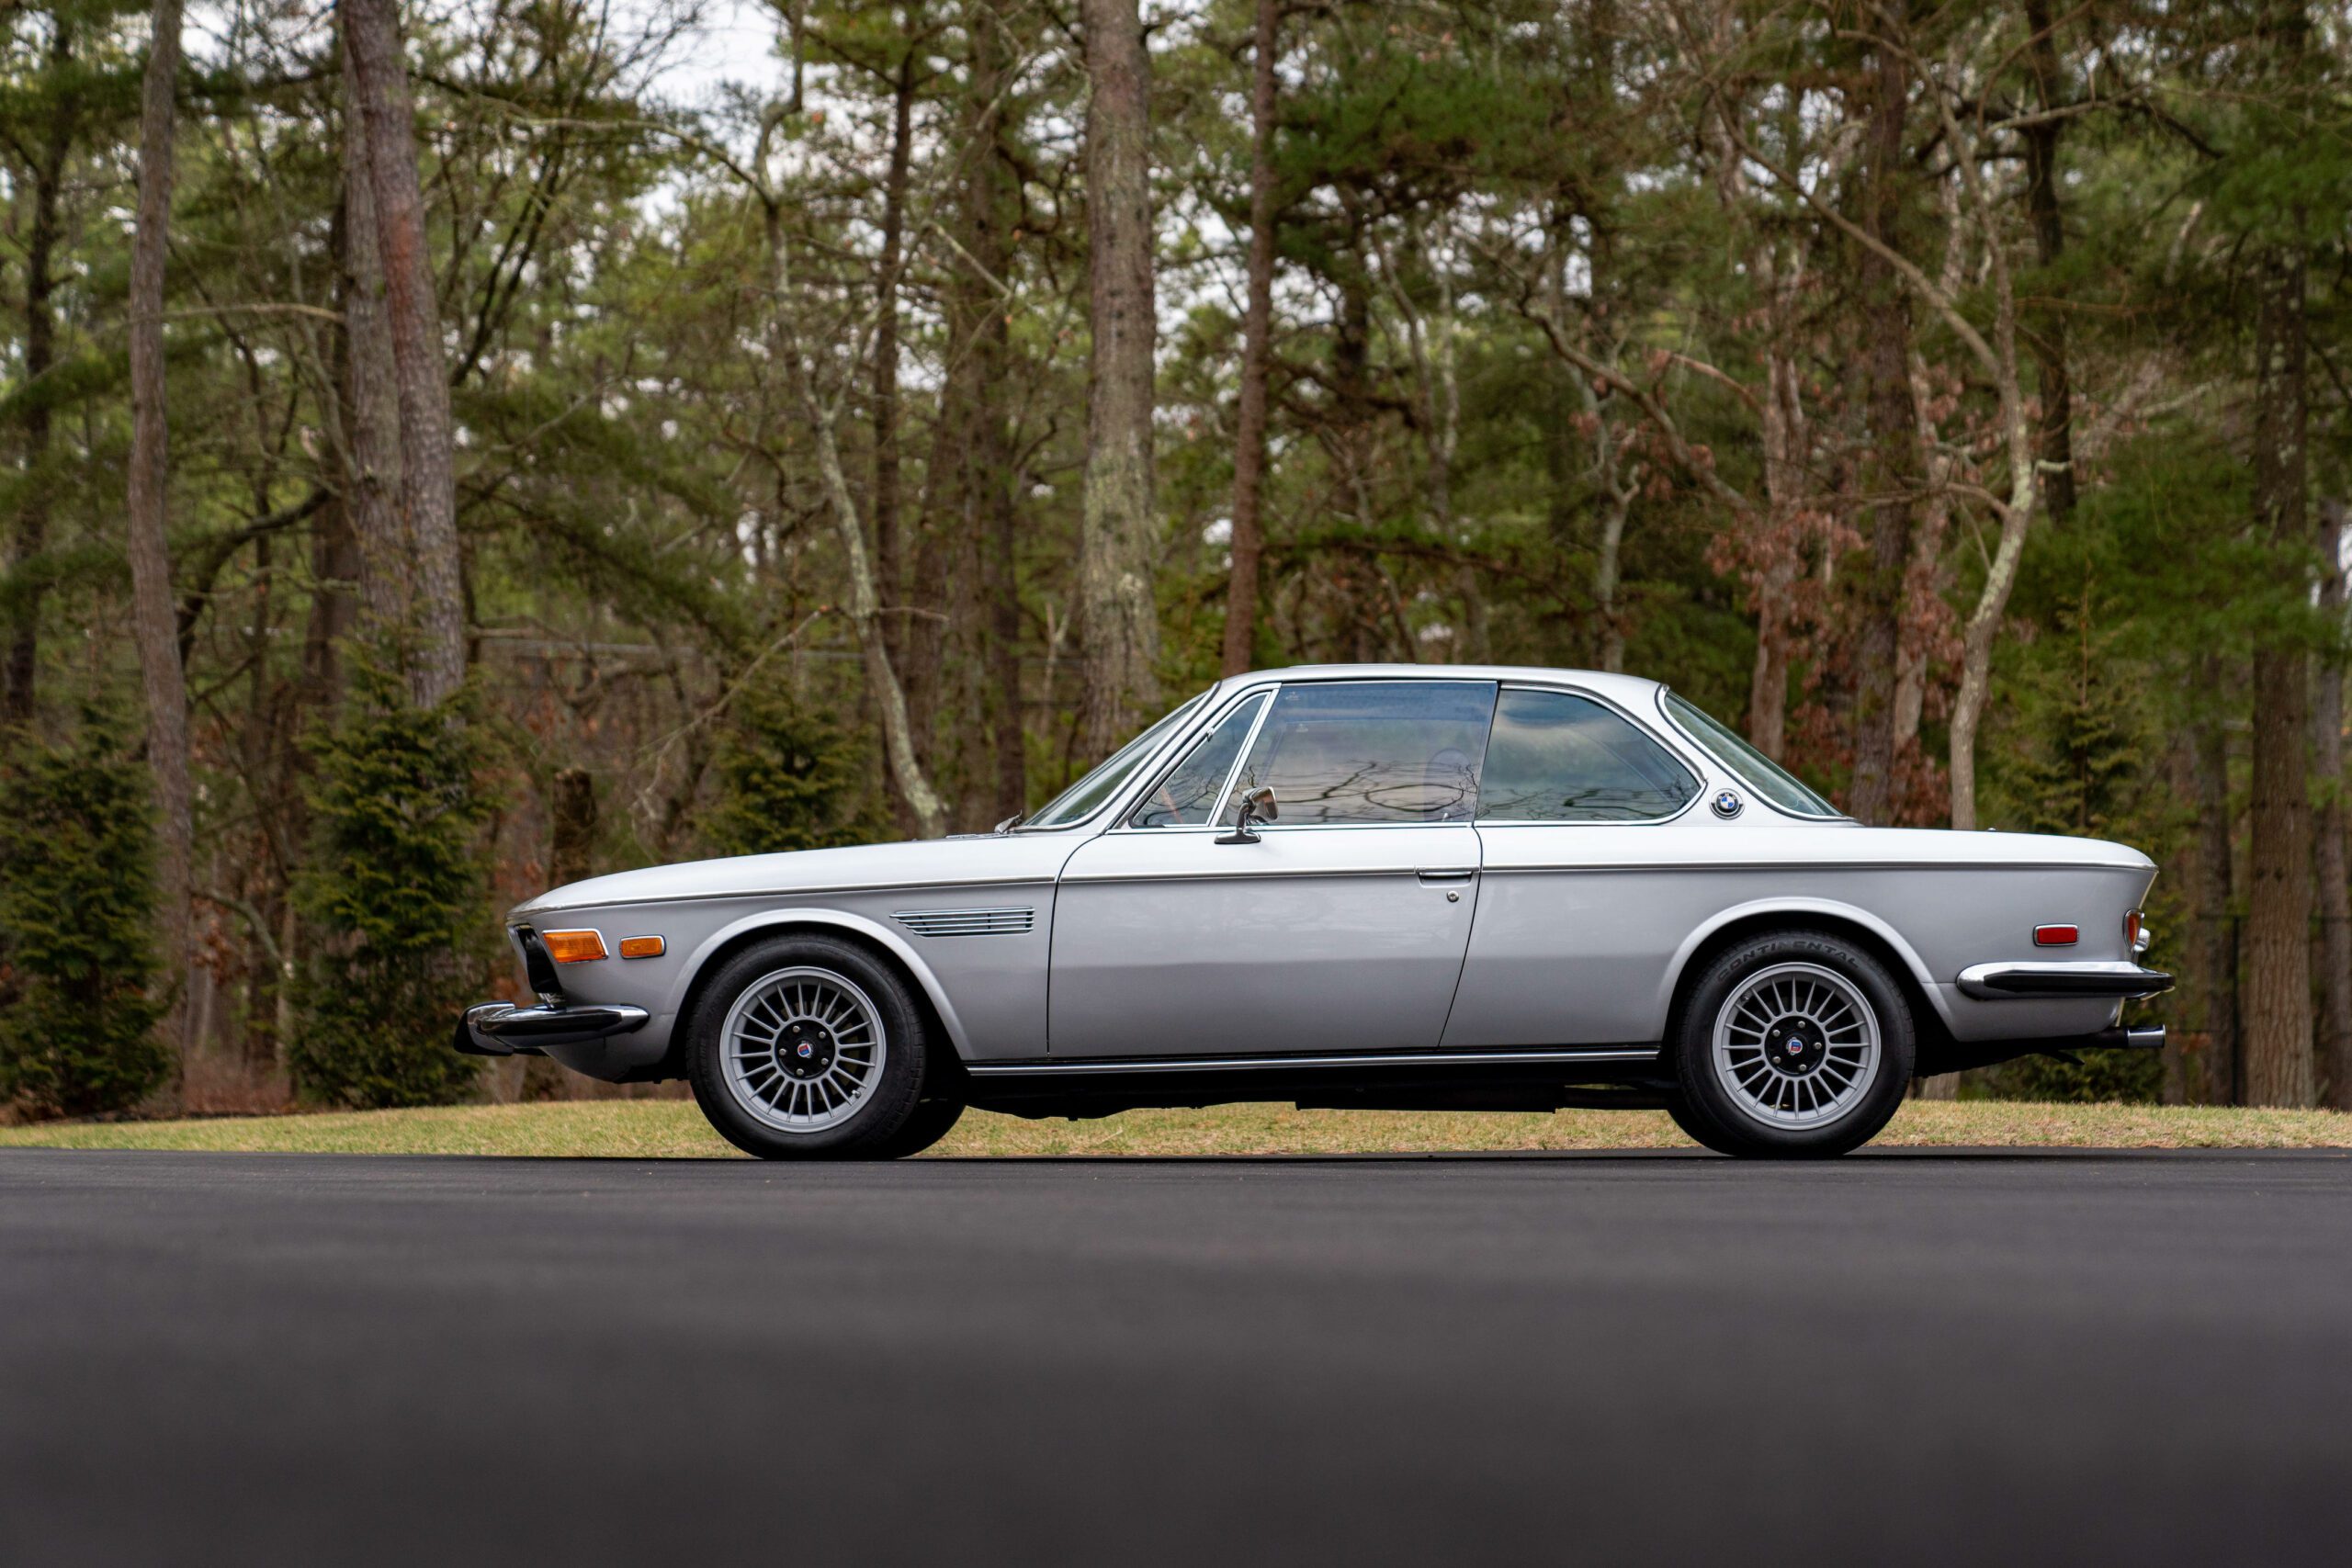 1973 Bmw 3.0 Cs, 1973 BMW 3.0 CS, BMW 3.0 CS